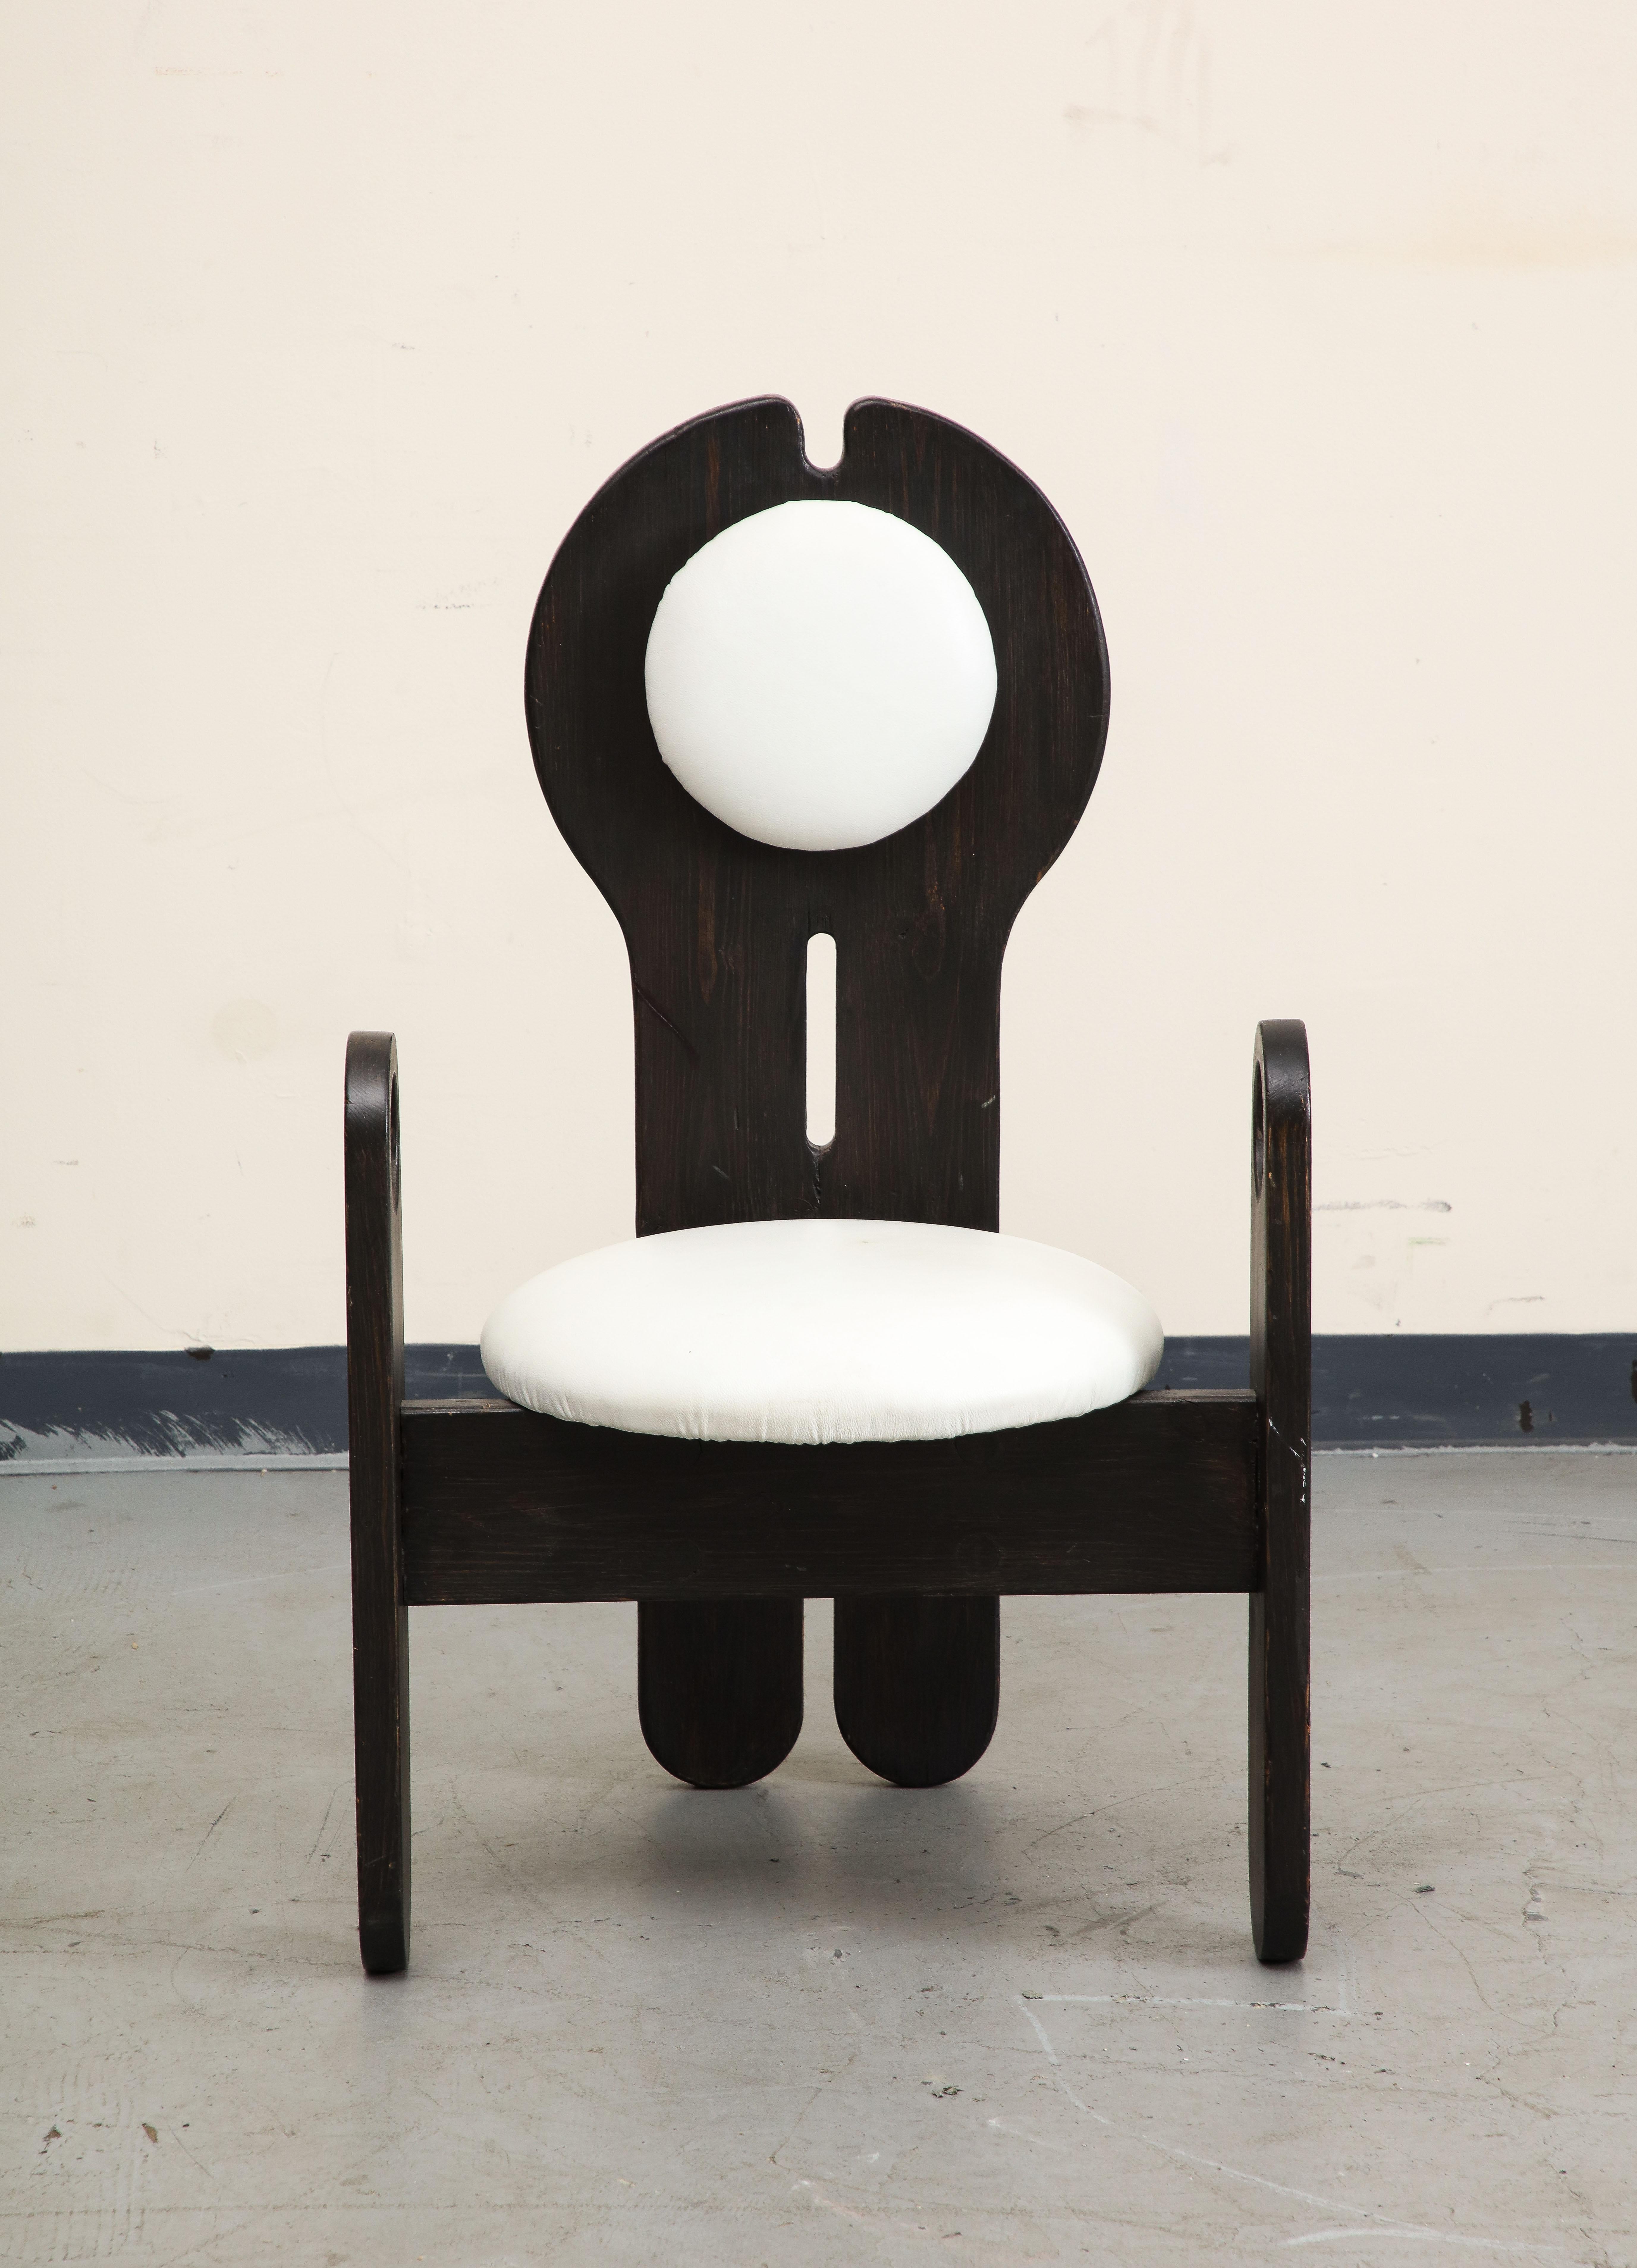 Ungarischer Studio Beistellstuhl von Szedleczky Design, 1960er Jahre. Schwarz lackierter Holzrahmen in organischer, stempelartiger Form mit einzigartigen runden Armlehnen. Kopfstütze und Sitz sind mit weißem Leder bezogen.